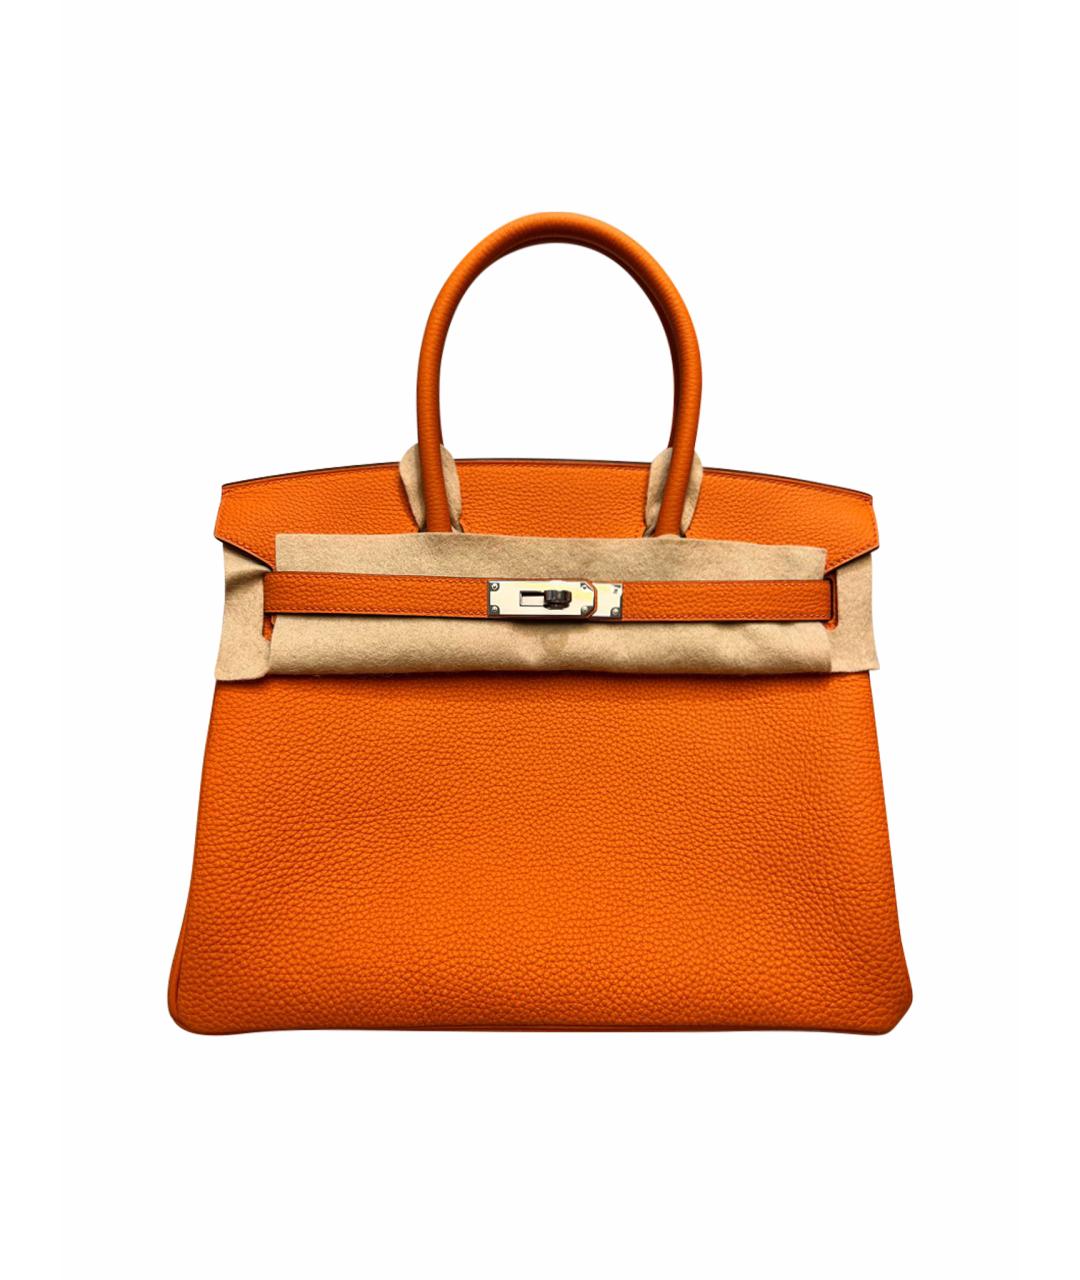 HERMES Оранжевая кожаная сумка с короткими ручками, фото 1